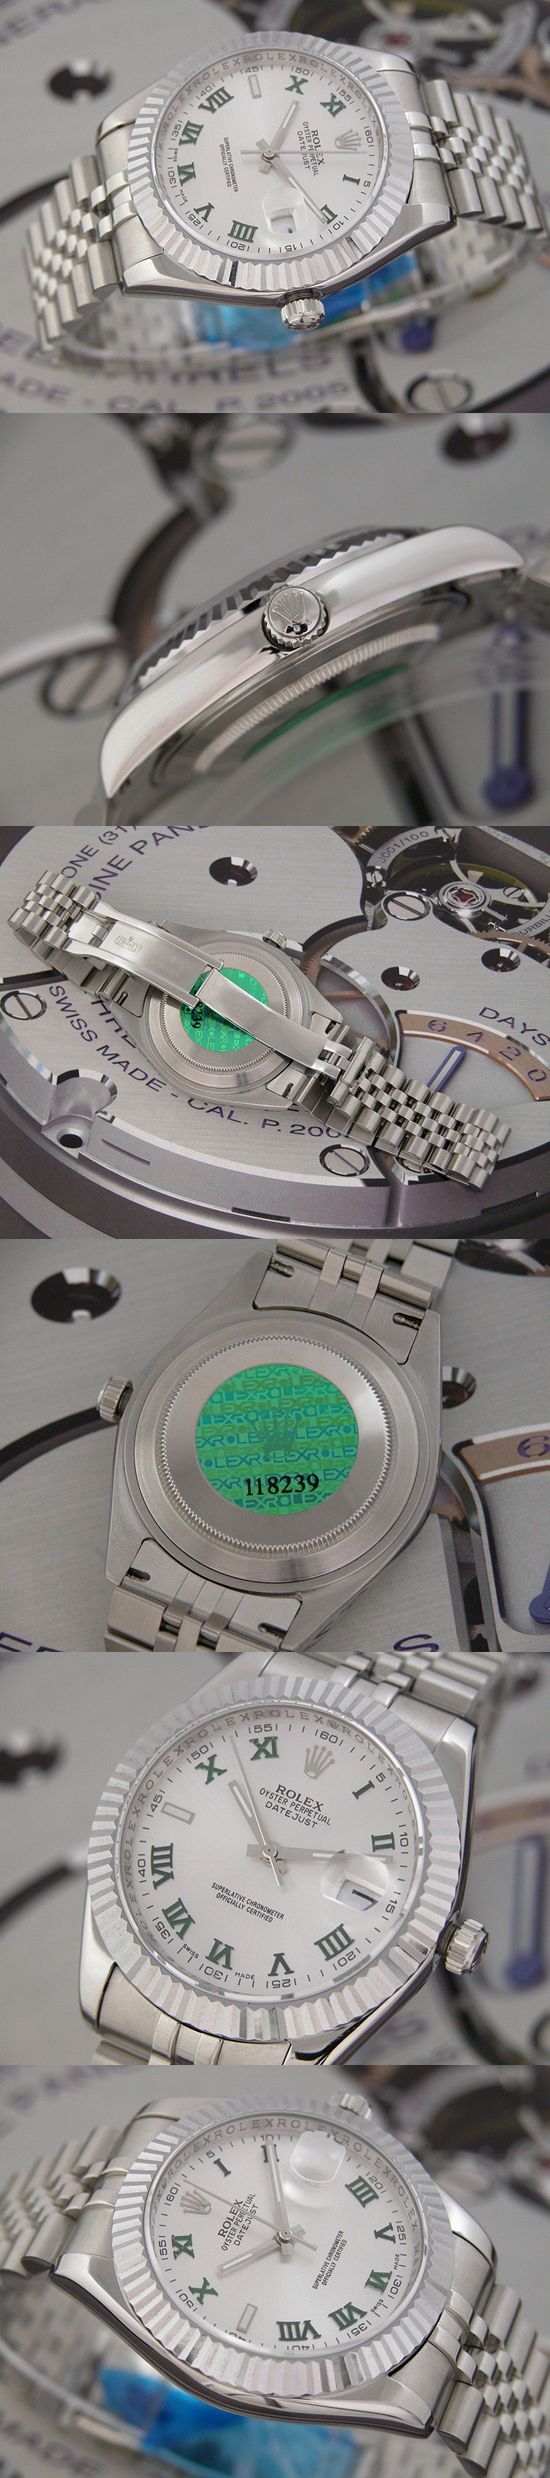 おしゃれなブランド時計がロレックス-デイトジャスト-ROLEX-118239-103-男性用を提供します.